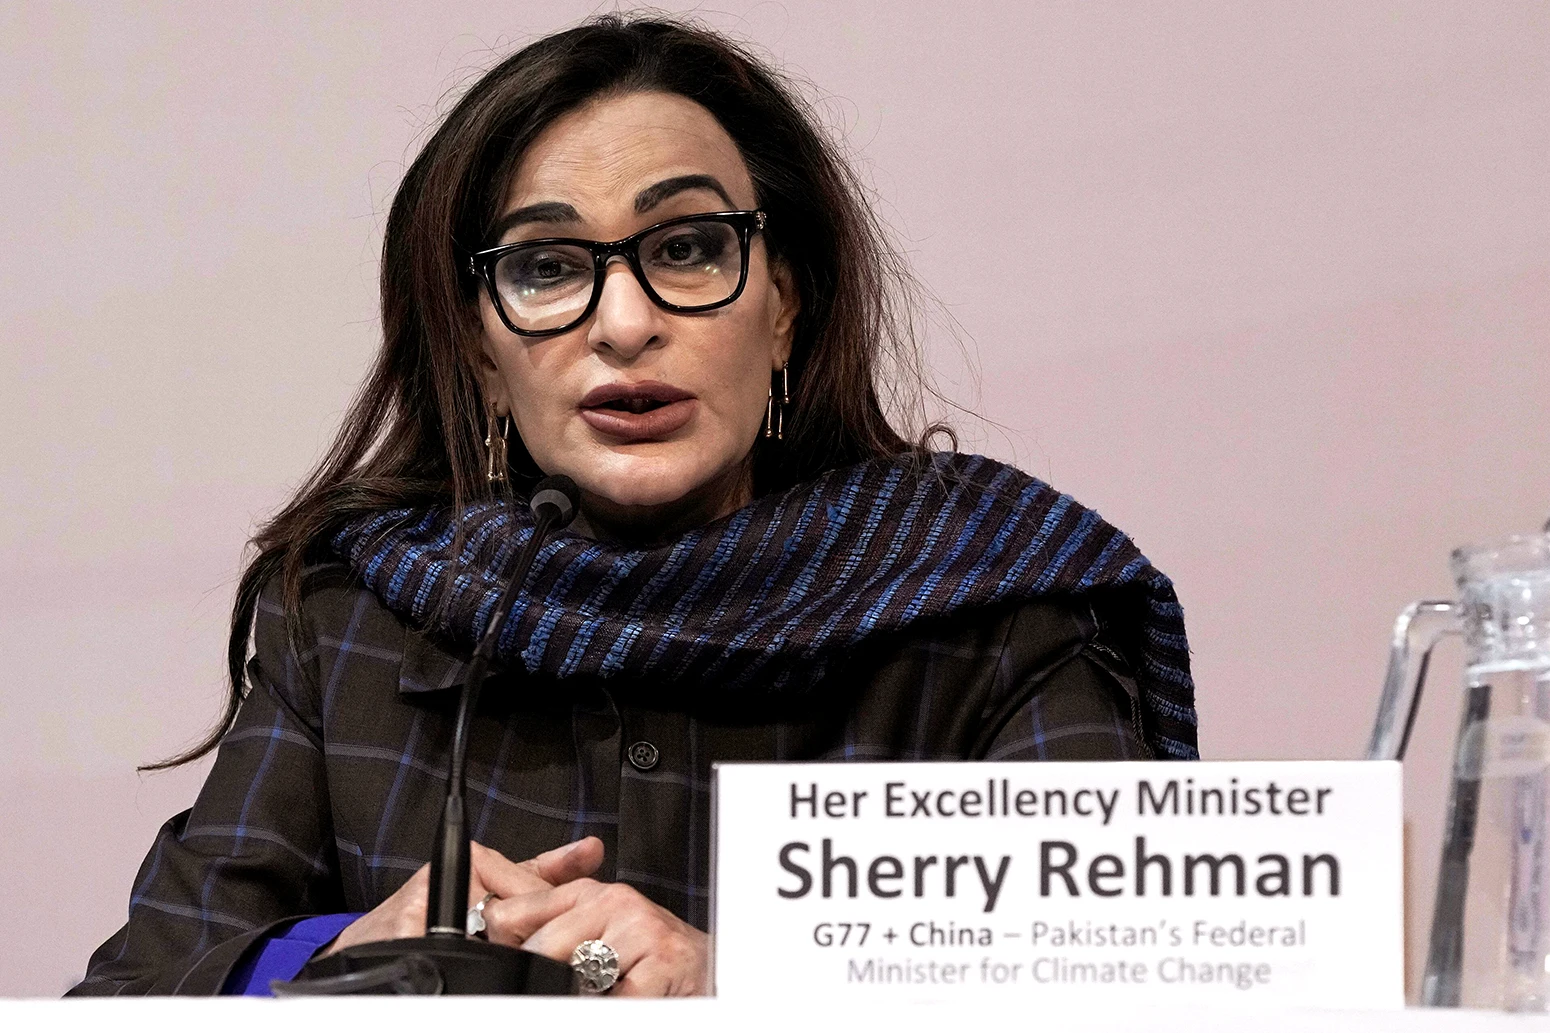 Sherry Rehman รัฐมนตรีกระทรวงการเปลี่ยนแปลงสภาพภูมิอากาศของปากีสถาน ที่งาน COP27 เมื่อวันที่ 17 พฤศจิกายน 2022